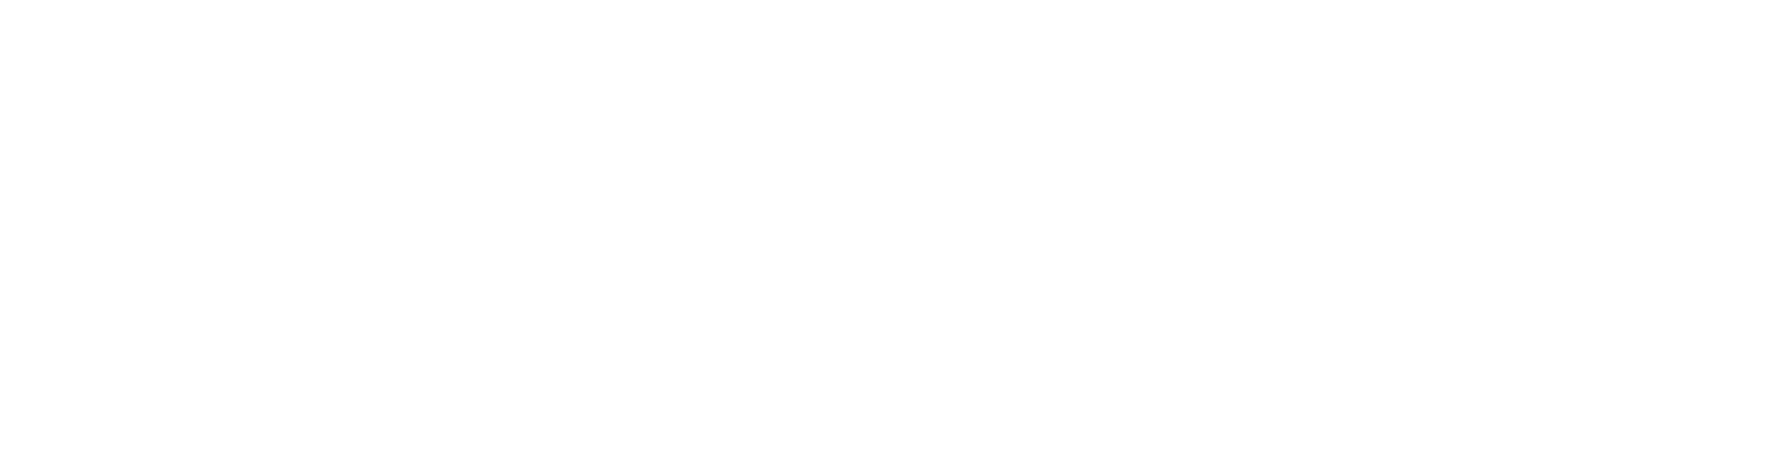 Hormones Comprehensive Panel